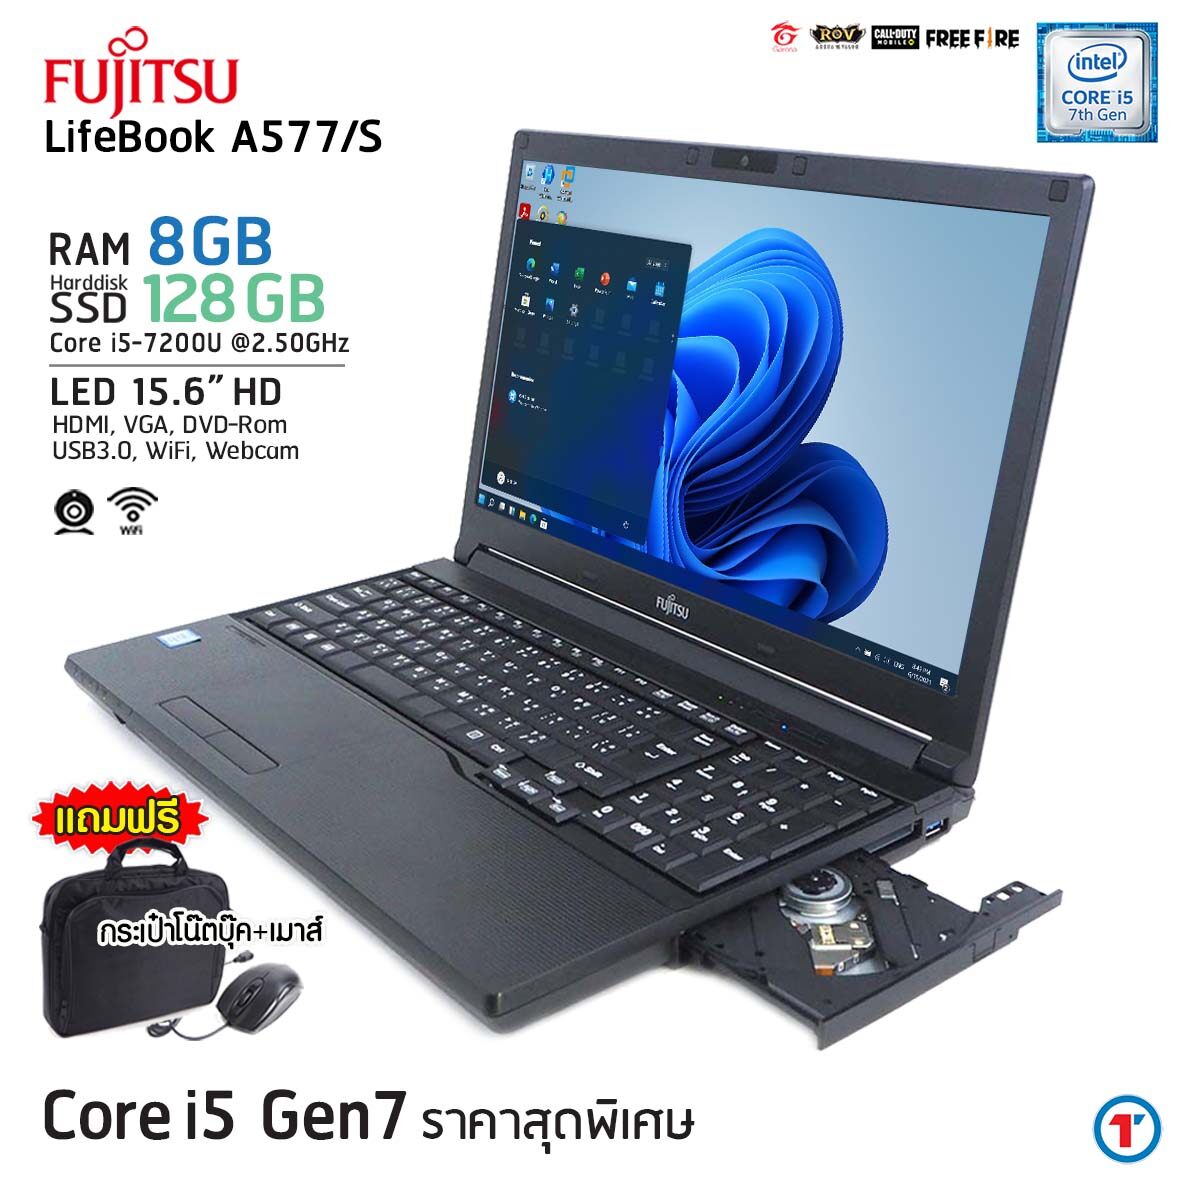 โน๊ตบุ๊ค Fujitsu Lifebook A577/S Core i5 Gen 7 RAM 8 SSD 128 GB ขนาด 15.6 นิ้ว คีย์บอร์ดแยก มีกล้องหน้า สเปคแรง เร็ว เล่นเกมได้ Refurbished laptop used notebook มีประกัน by Totalsolution